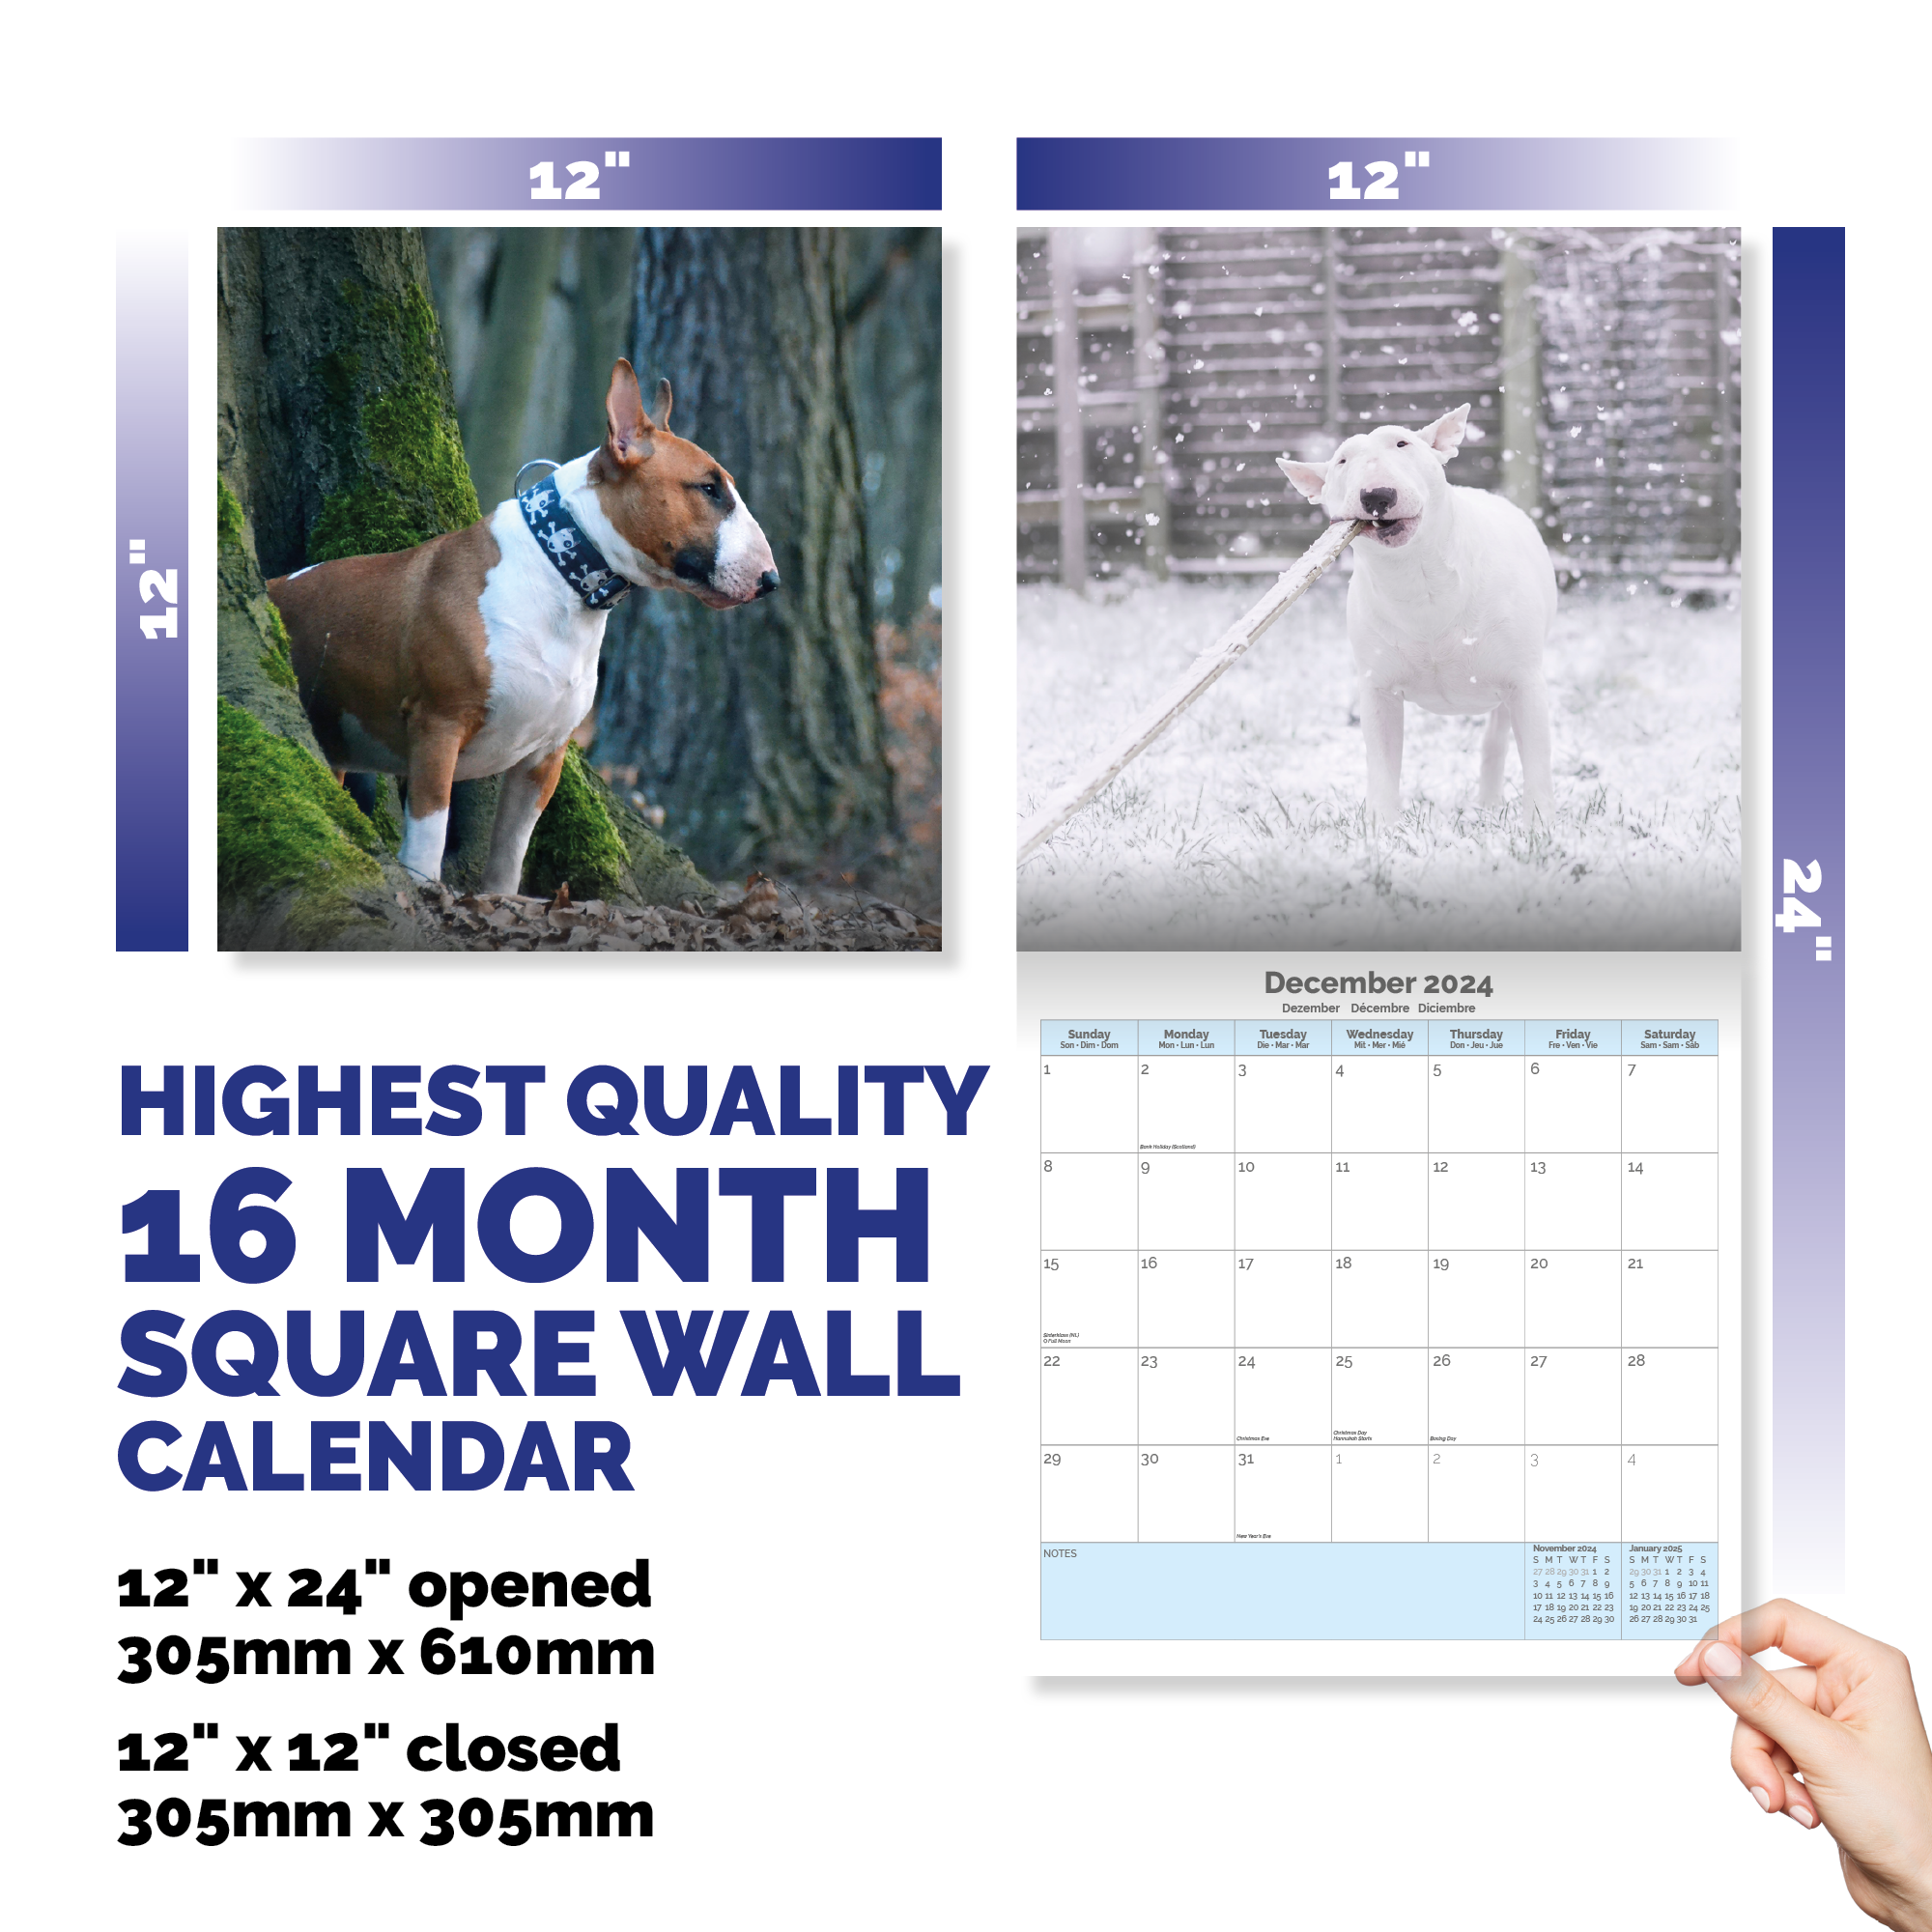 Bull Terrier Calendar 2024